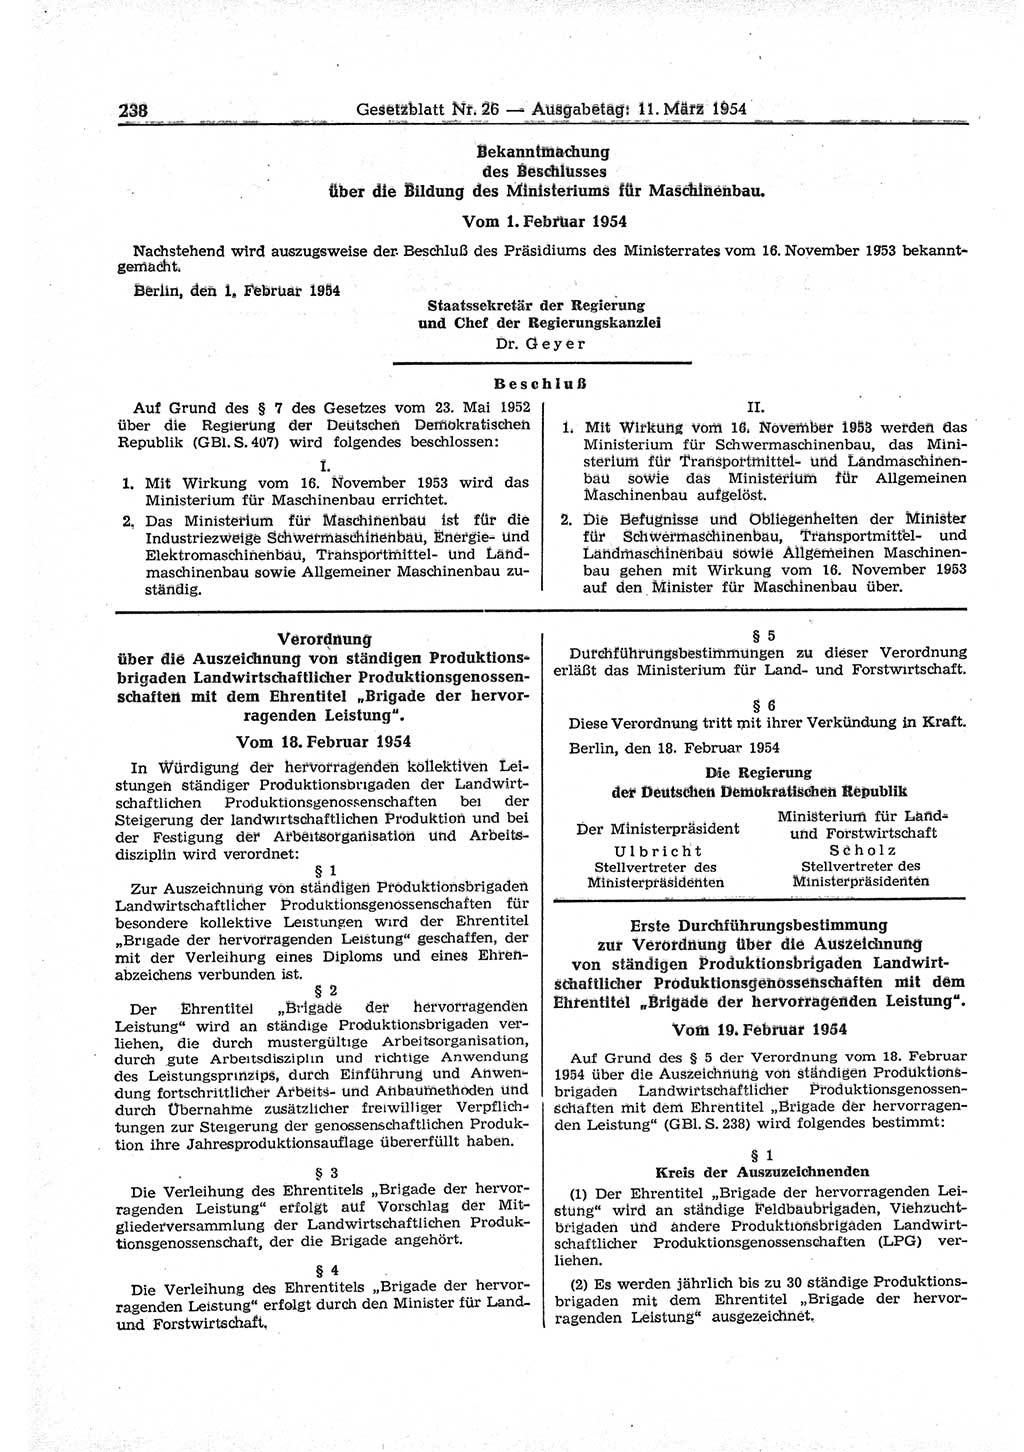 Gesetzblatt (GBl.) der Deutschen Demokratischen Republik (DDR) 1954, Seite 238 (GBl. DDR 1954, S. 238)